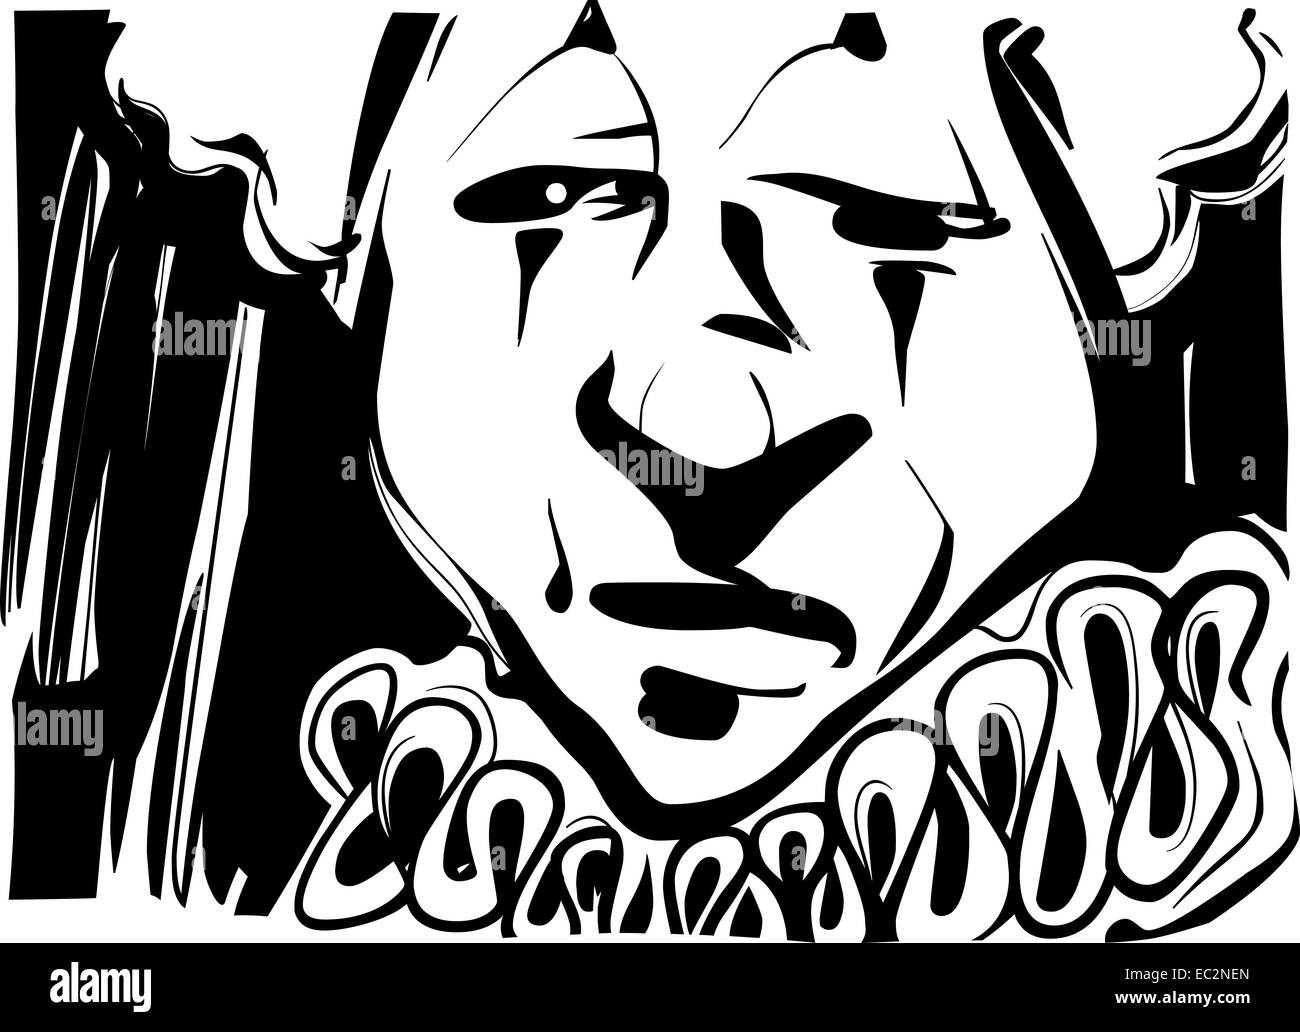 Schwarz / weiß Skizze Zeichnung Illustration der traurige Clown-Gesicht Stockfoto